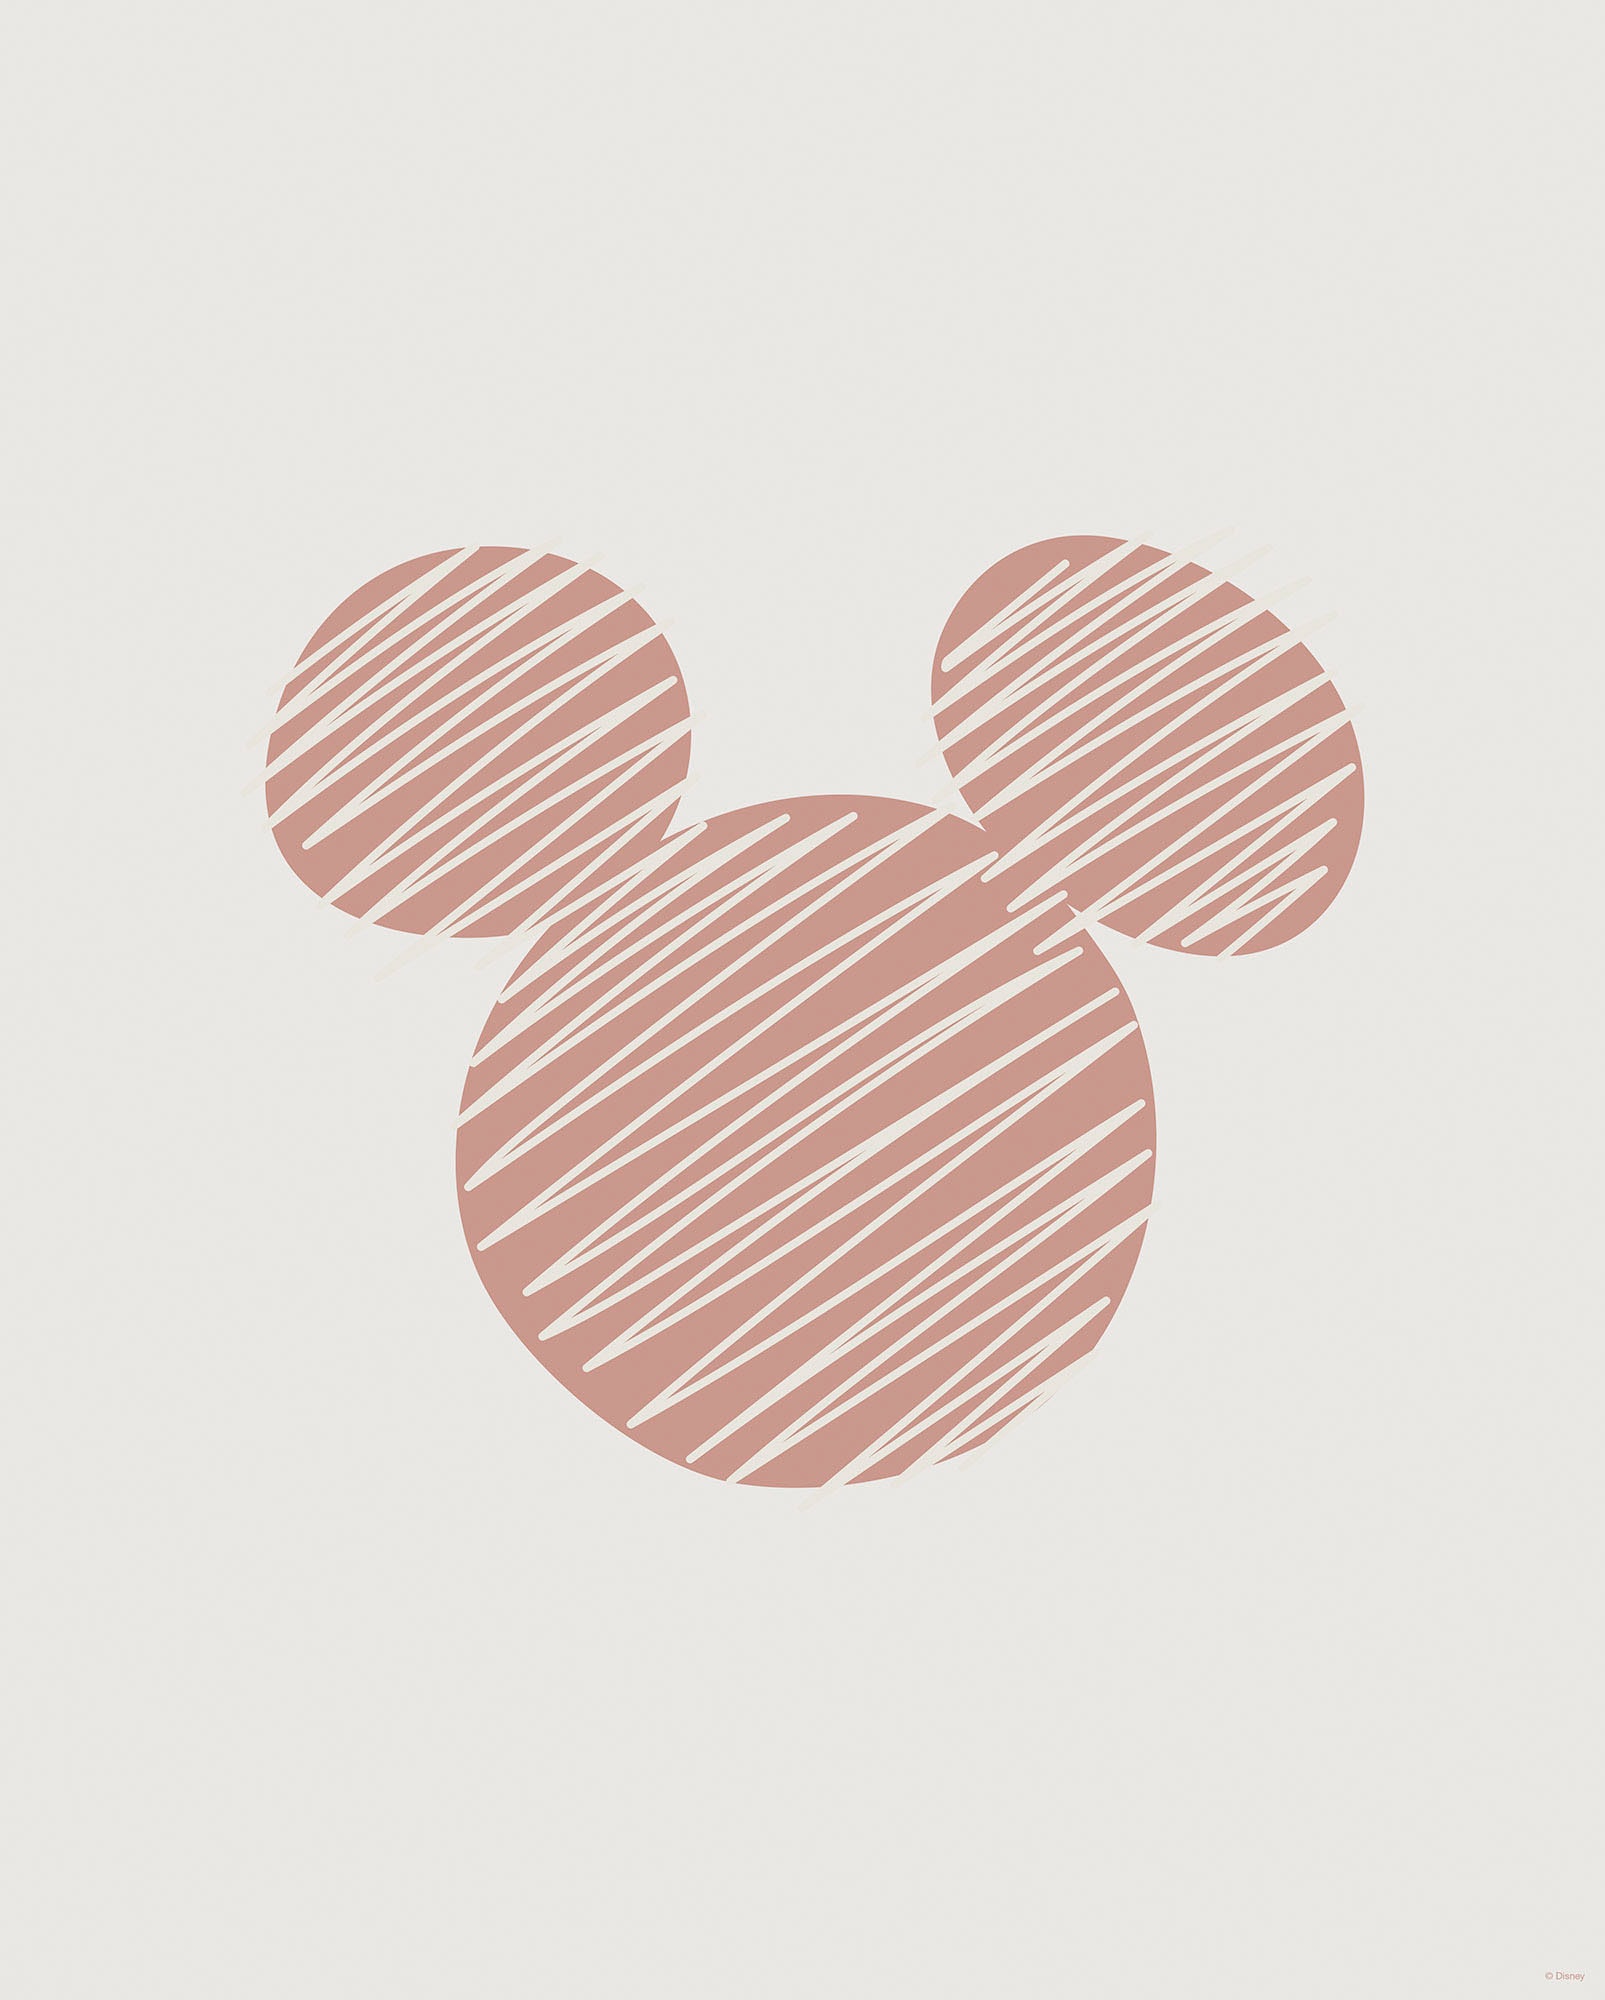 Komar Wandbild »Striped Mouse«, (1 St.), Deutsches Premium-Poster Fotopapier mit seidenmatter Oberfläche und hoher Lichtbeständigkeit. Für fotorealistische Drucke mit gestochen scharfen Details und hervorragender Farbbrillanz.